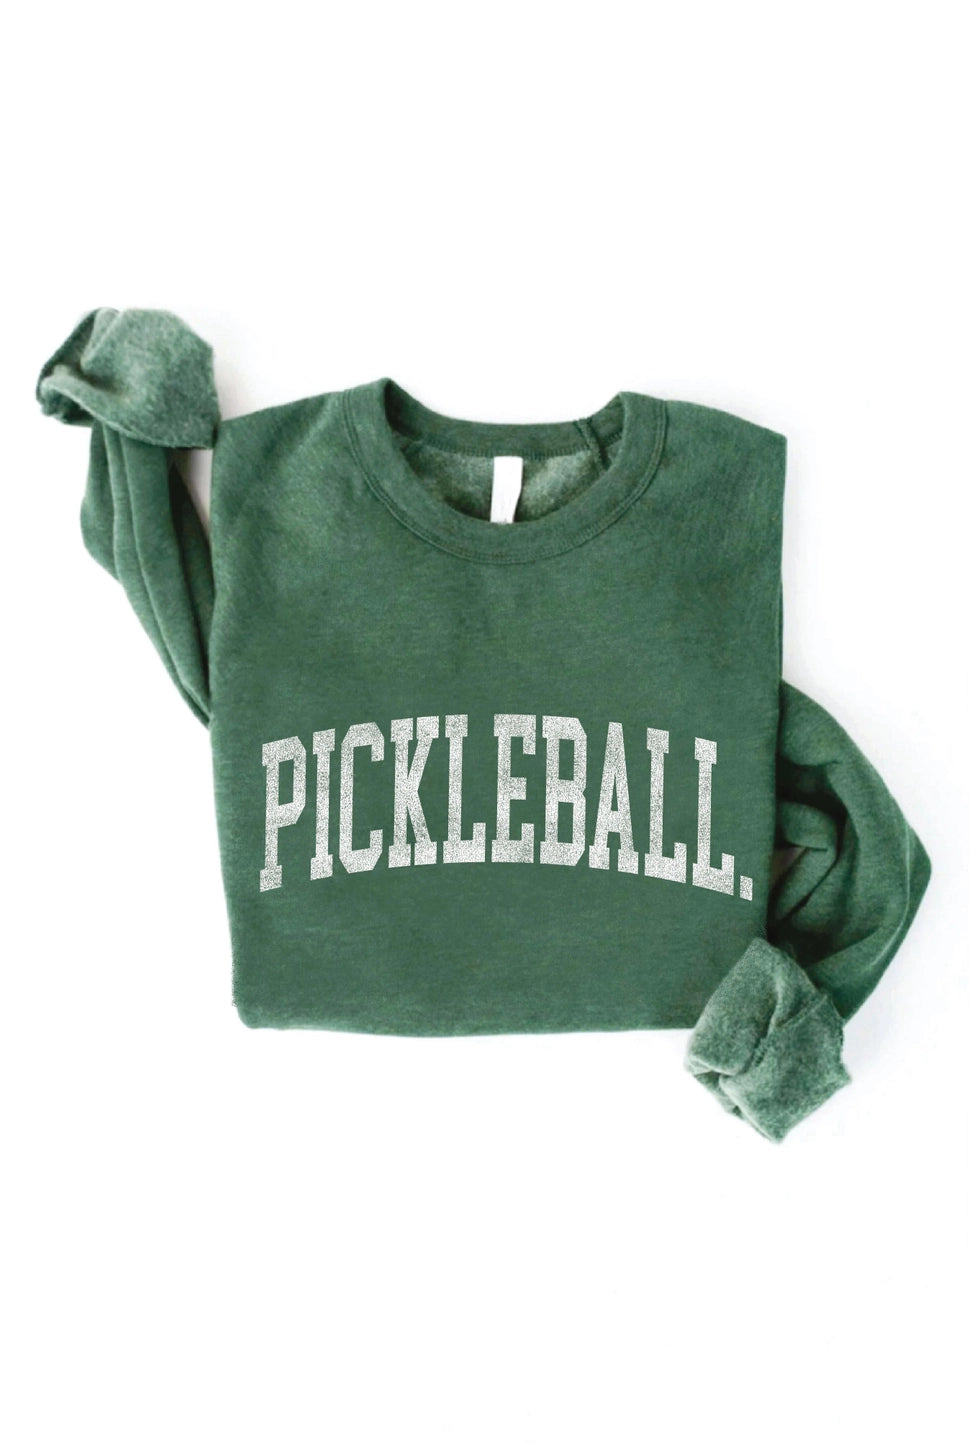 Pickleball Graphic Sweatshirt in Heather Forest